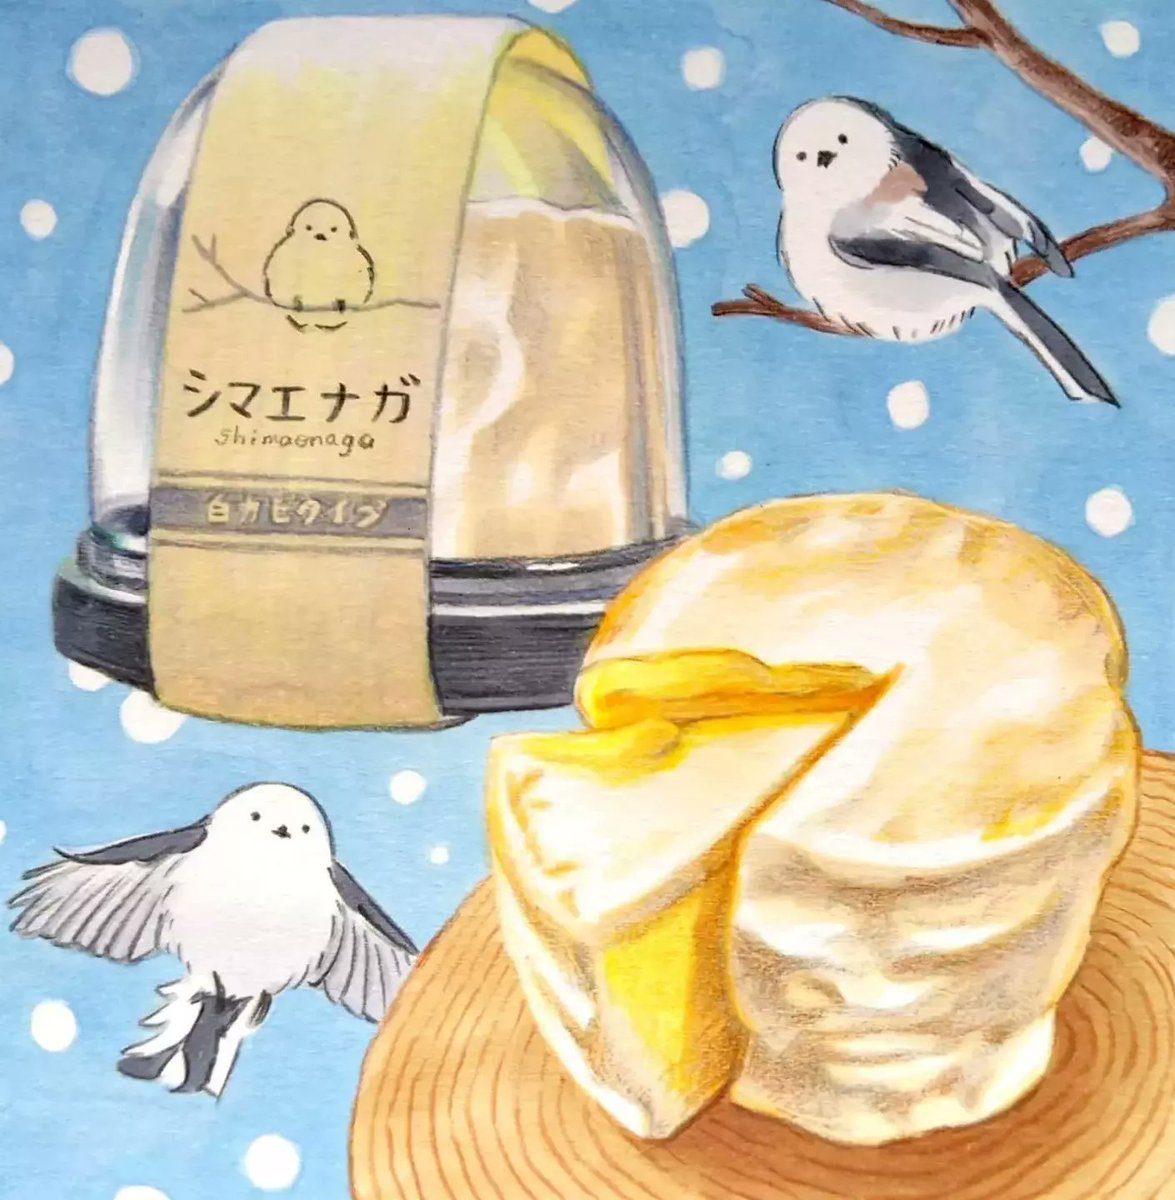 今日は #チーズの日 🧀🕊️根室市・チーズ工房チカプさんの「シマエナガ」。クリーミーで濃厚な白カビチーズ。カットすると中はとろ～り、滑らかな口どけ。熟成させてパンに塗っても◎。シマエナガの羽毛のようなふかふかの表皮も美味です。
 #田島ハルのくいしん簿 #北海道 #イラスト #食べ物イラスト 